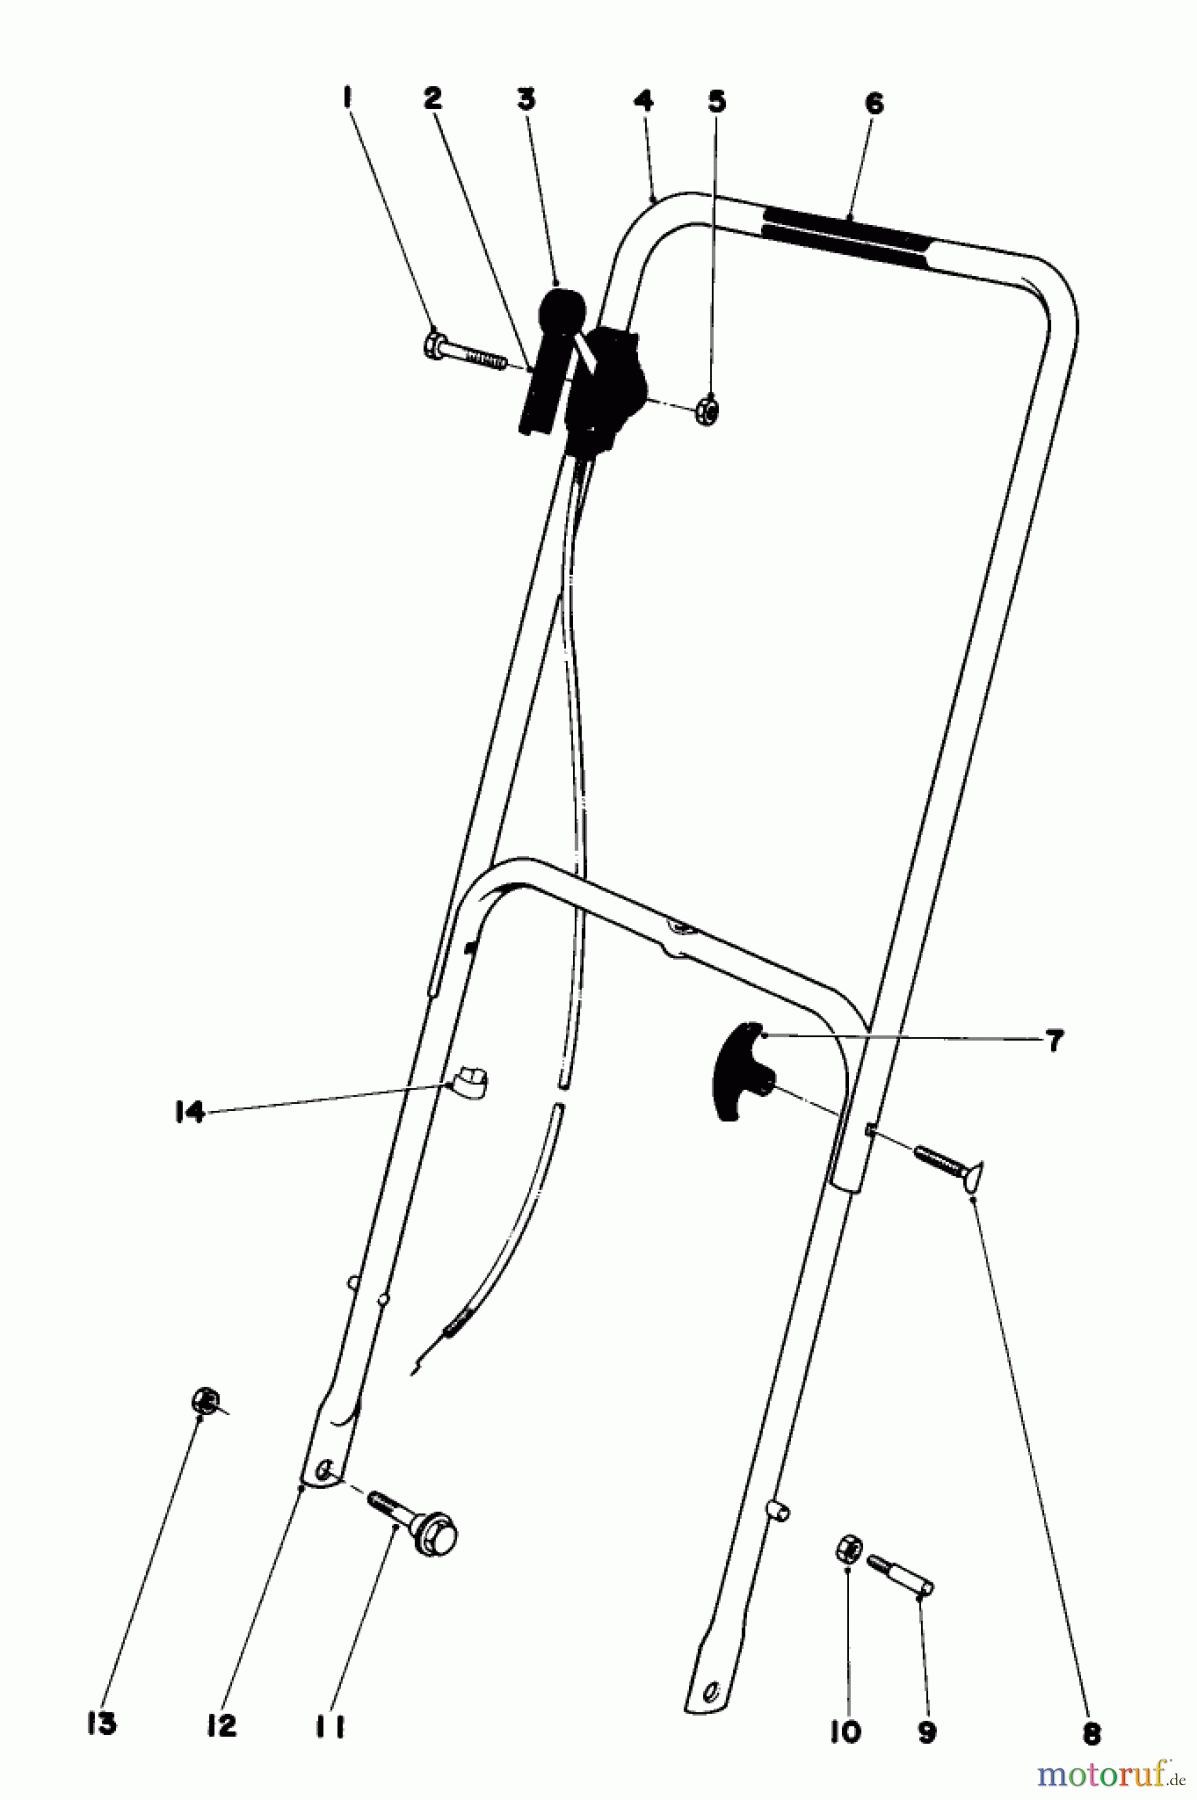  Toro Neu Mowers, Walk-Behind Seite 1 16370 - Toro Whirlwind II Lawnmower, 1979 (9000001-9999999) HANDLE ASSEMBLY MODEL 16360 AND 16370